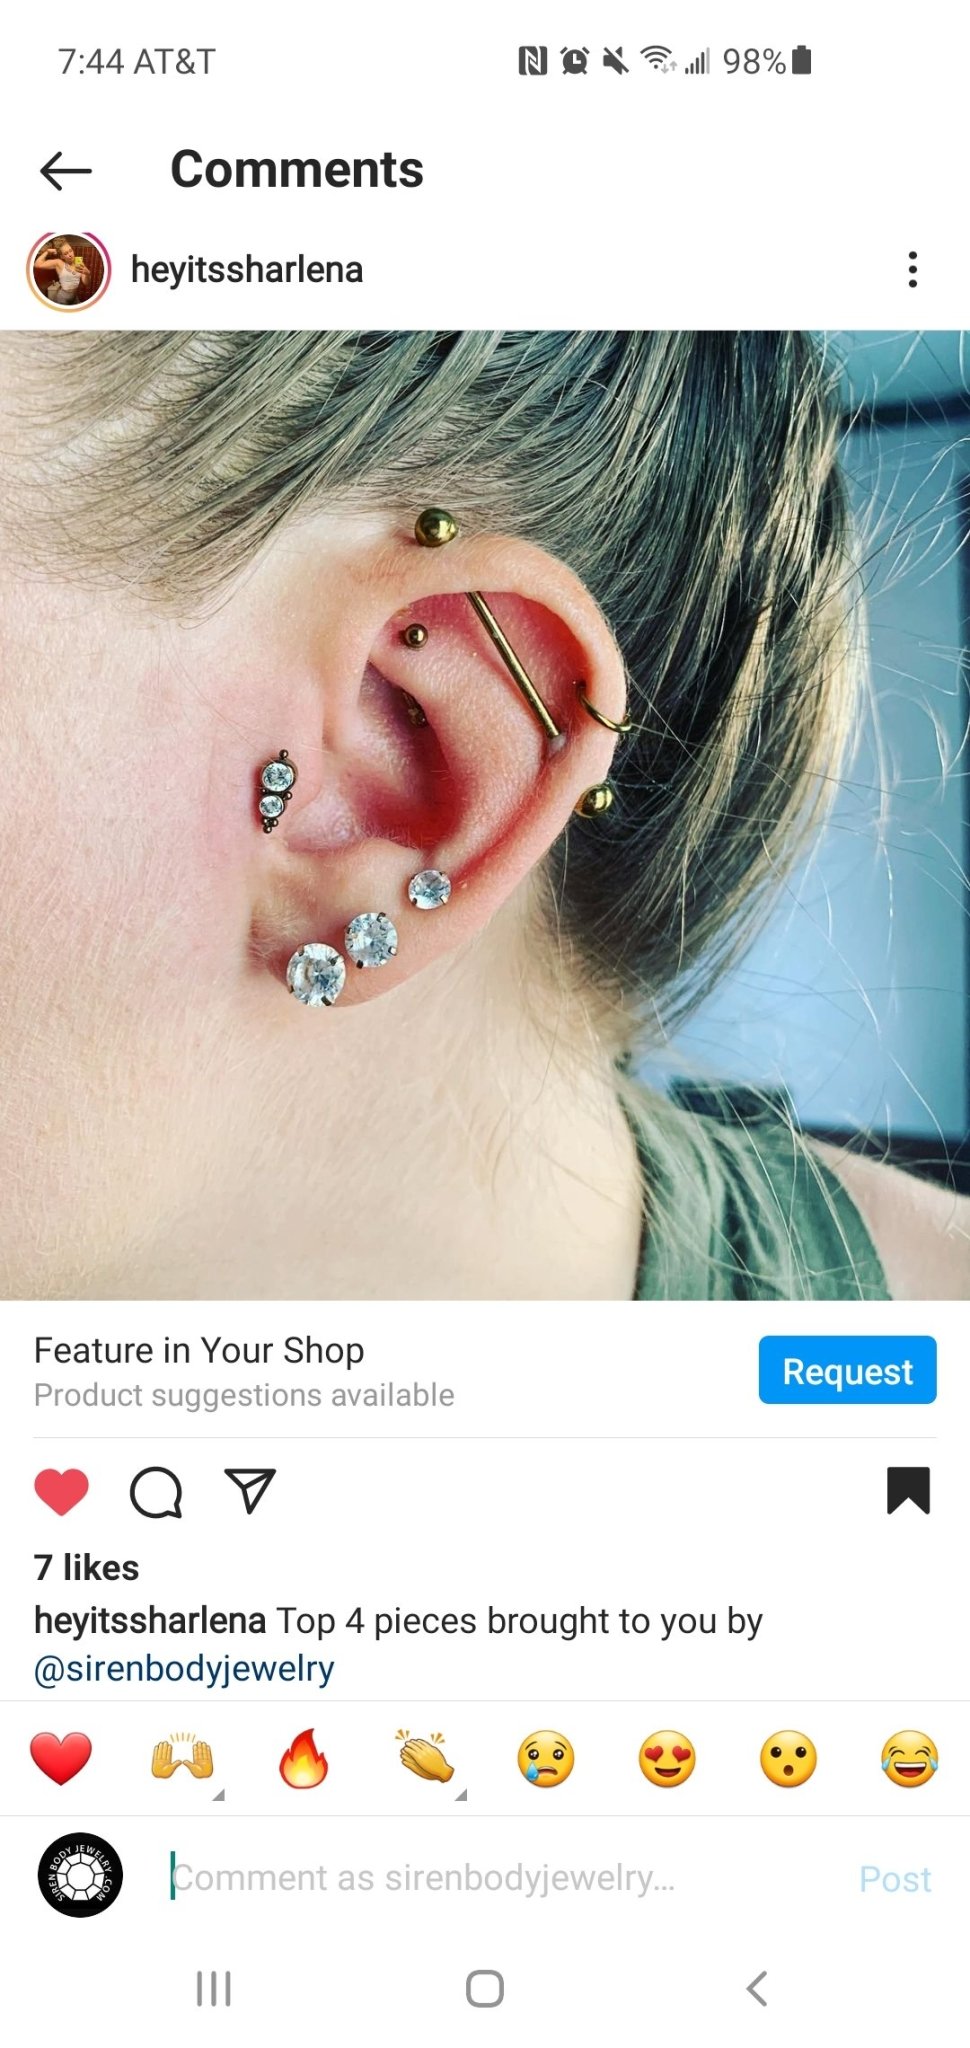 helix earrings studs